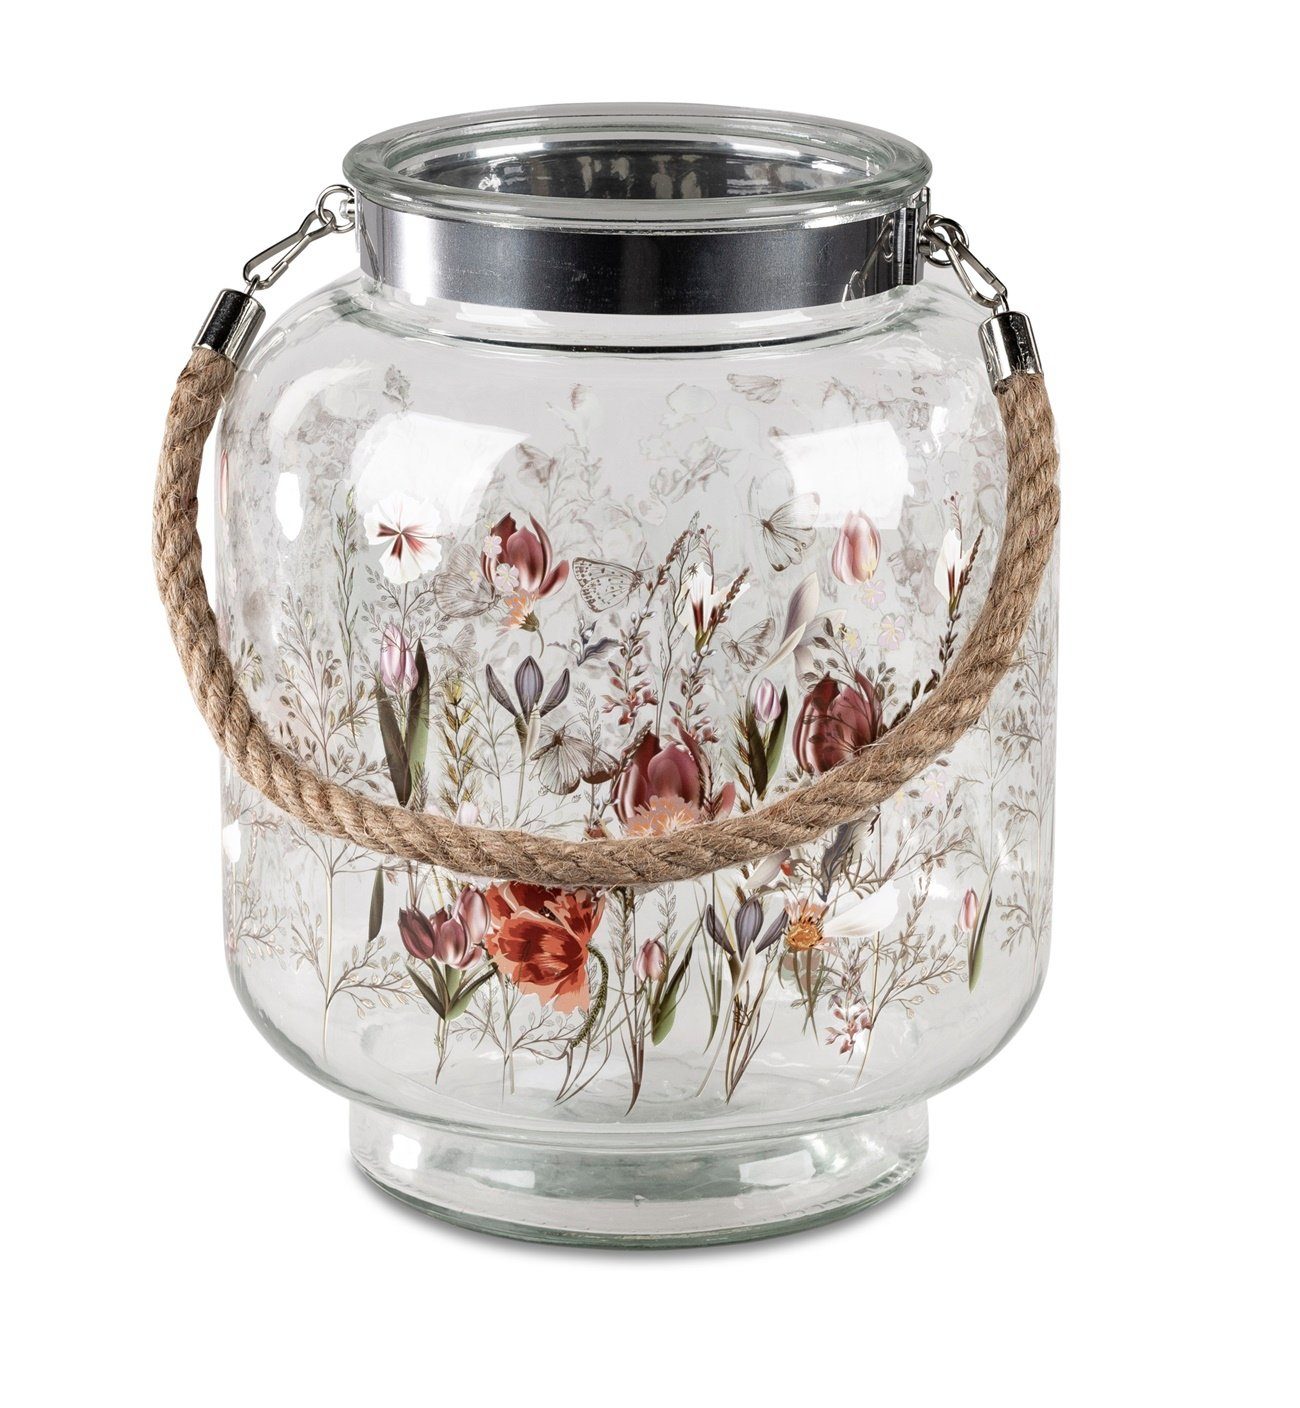 dekojohnson Windlicht-Glas Glaslaterne Blumendekor 22x28cm Windlicht